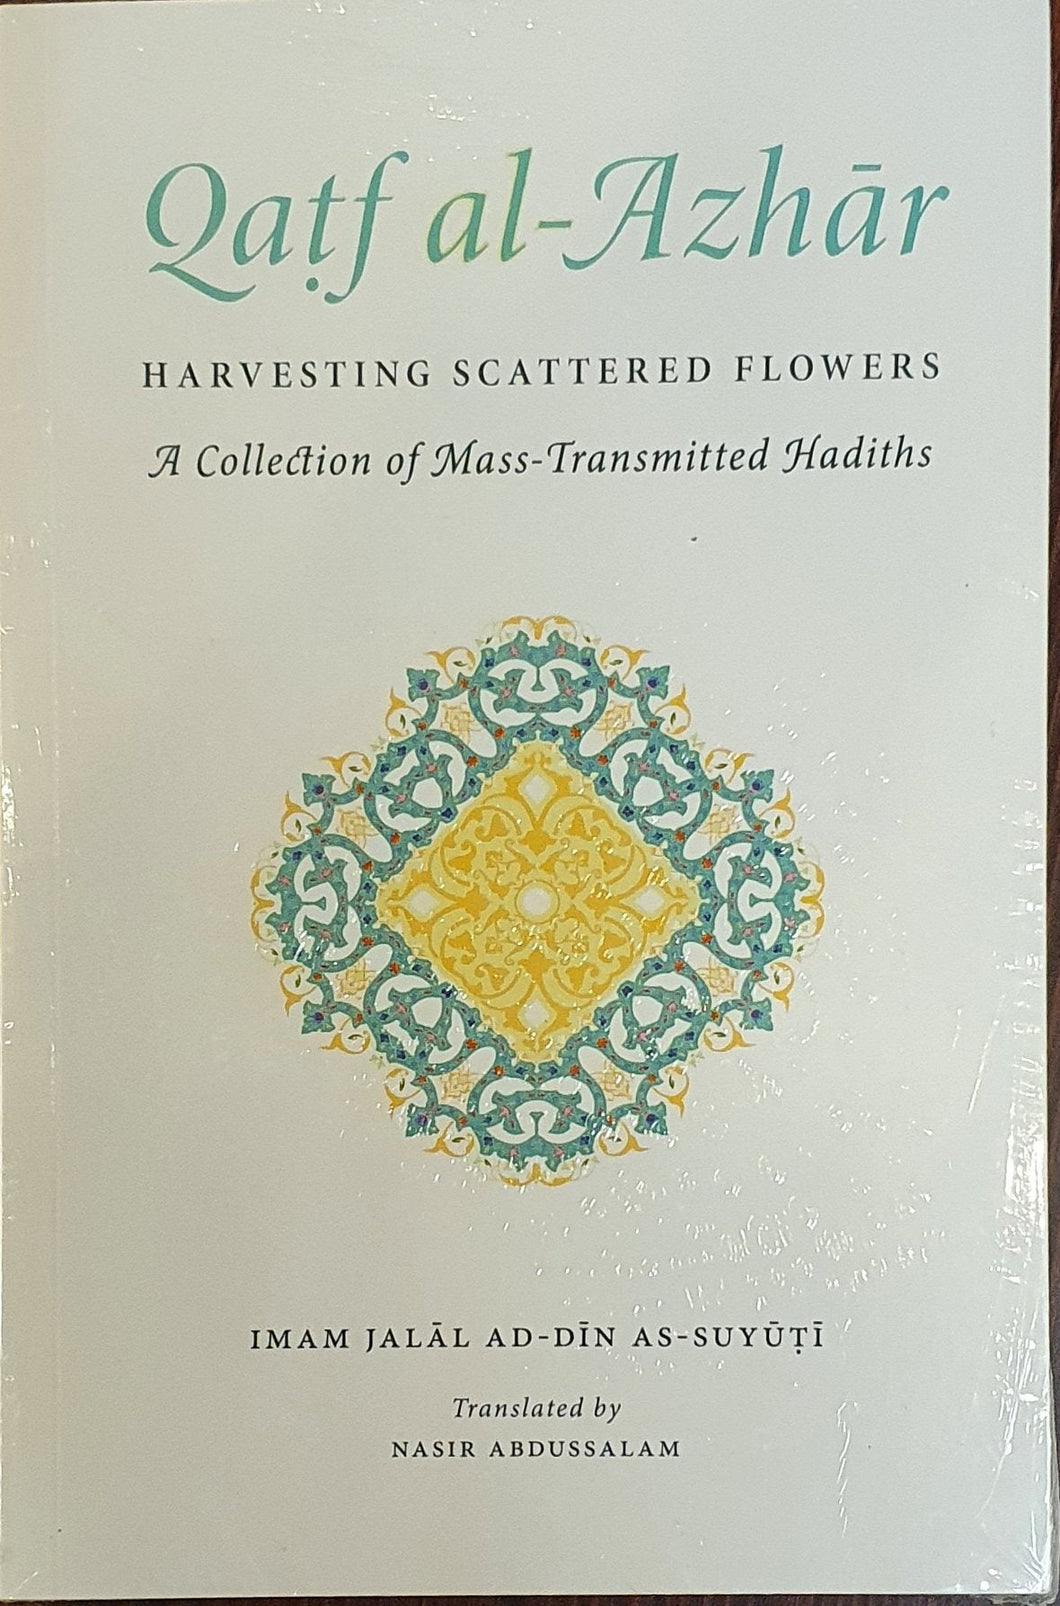 Qatf al-Azhar: Harvesting Scattered Flowers